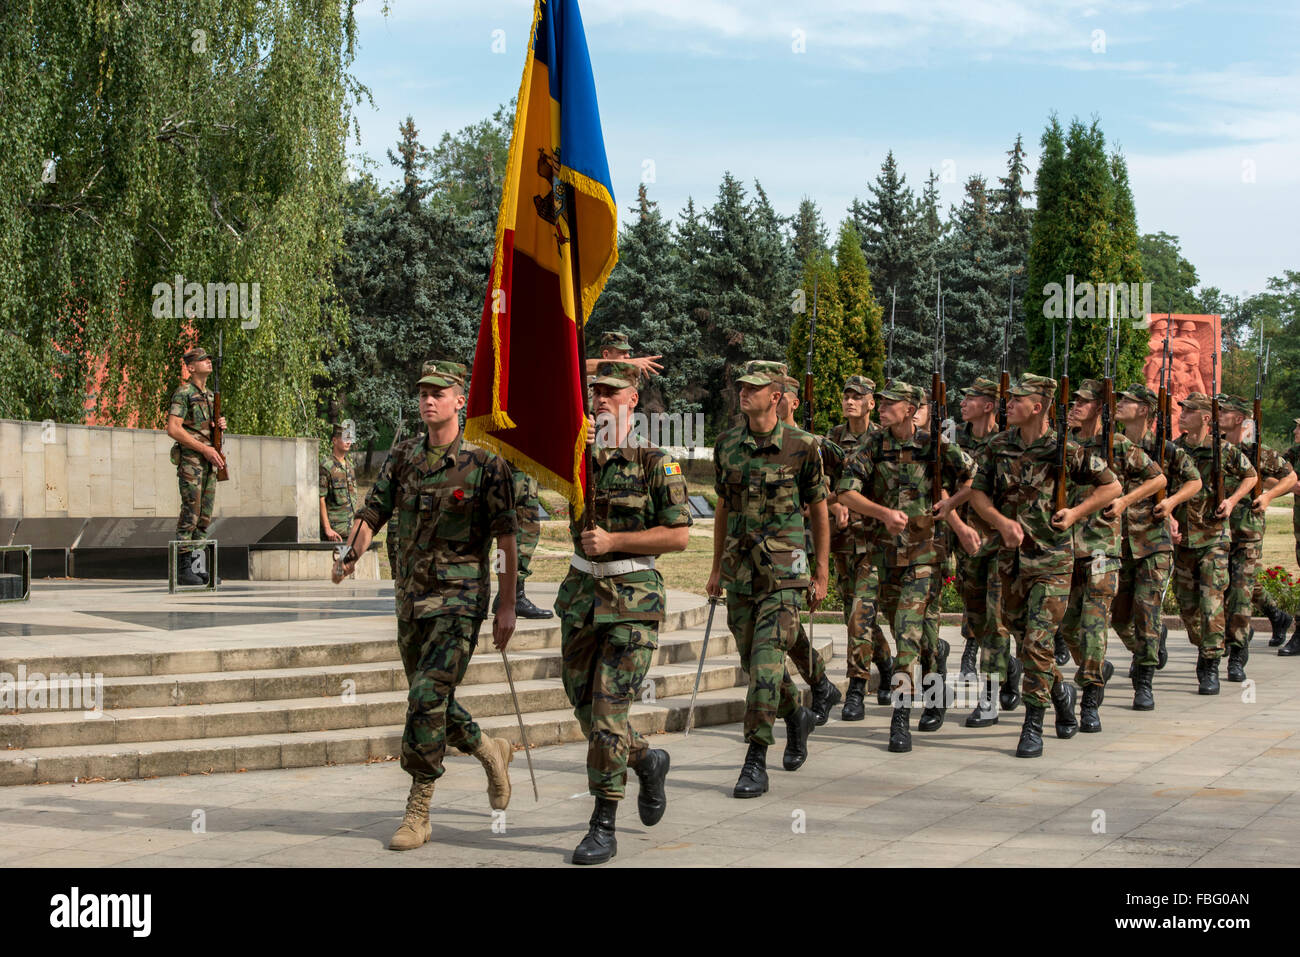 Los soldados ensayar para festejos del Día de Independencia, segunda guerra mundial complejo Memorial Eternitate, Chisinau Foto de stock